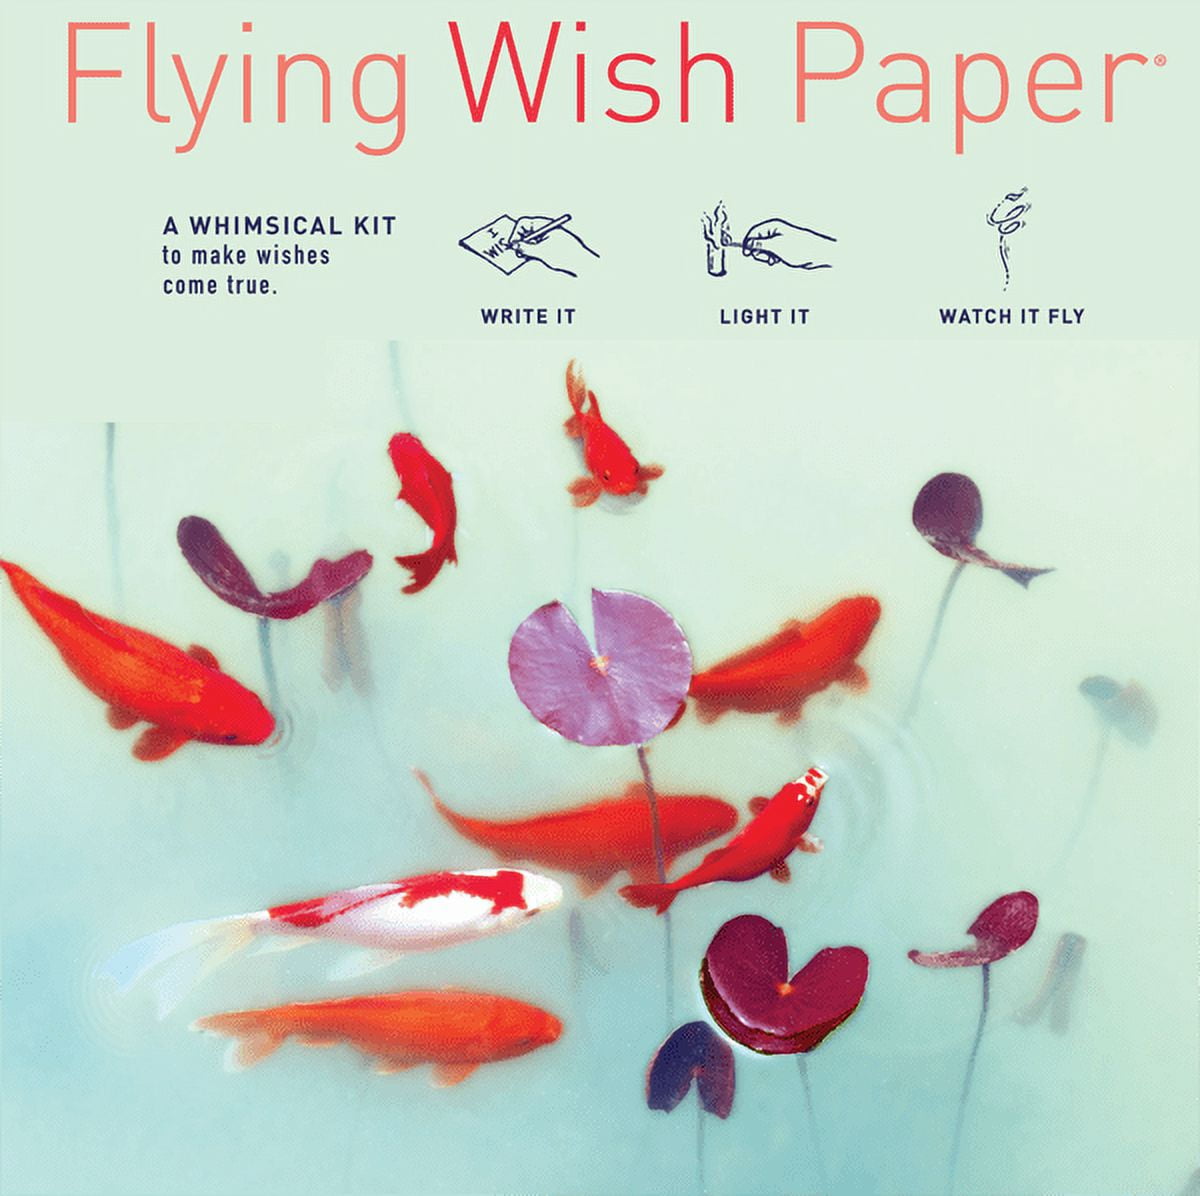 Flying Wish Paper - Write it., Light it, & Watch it Fly - KOI POND